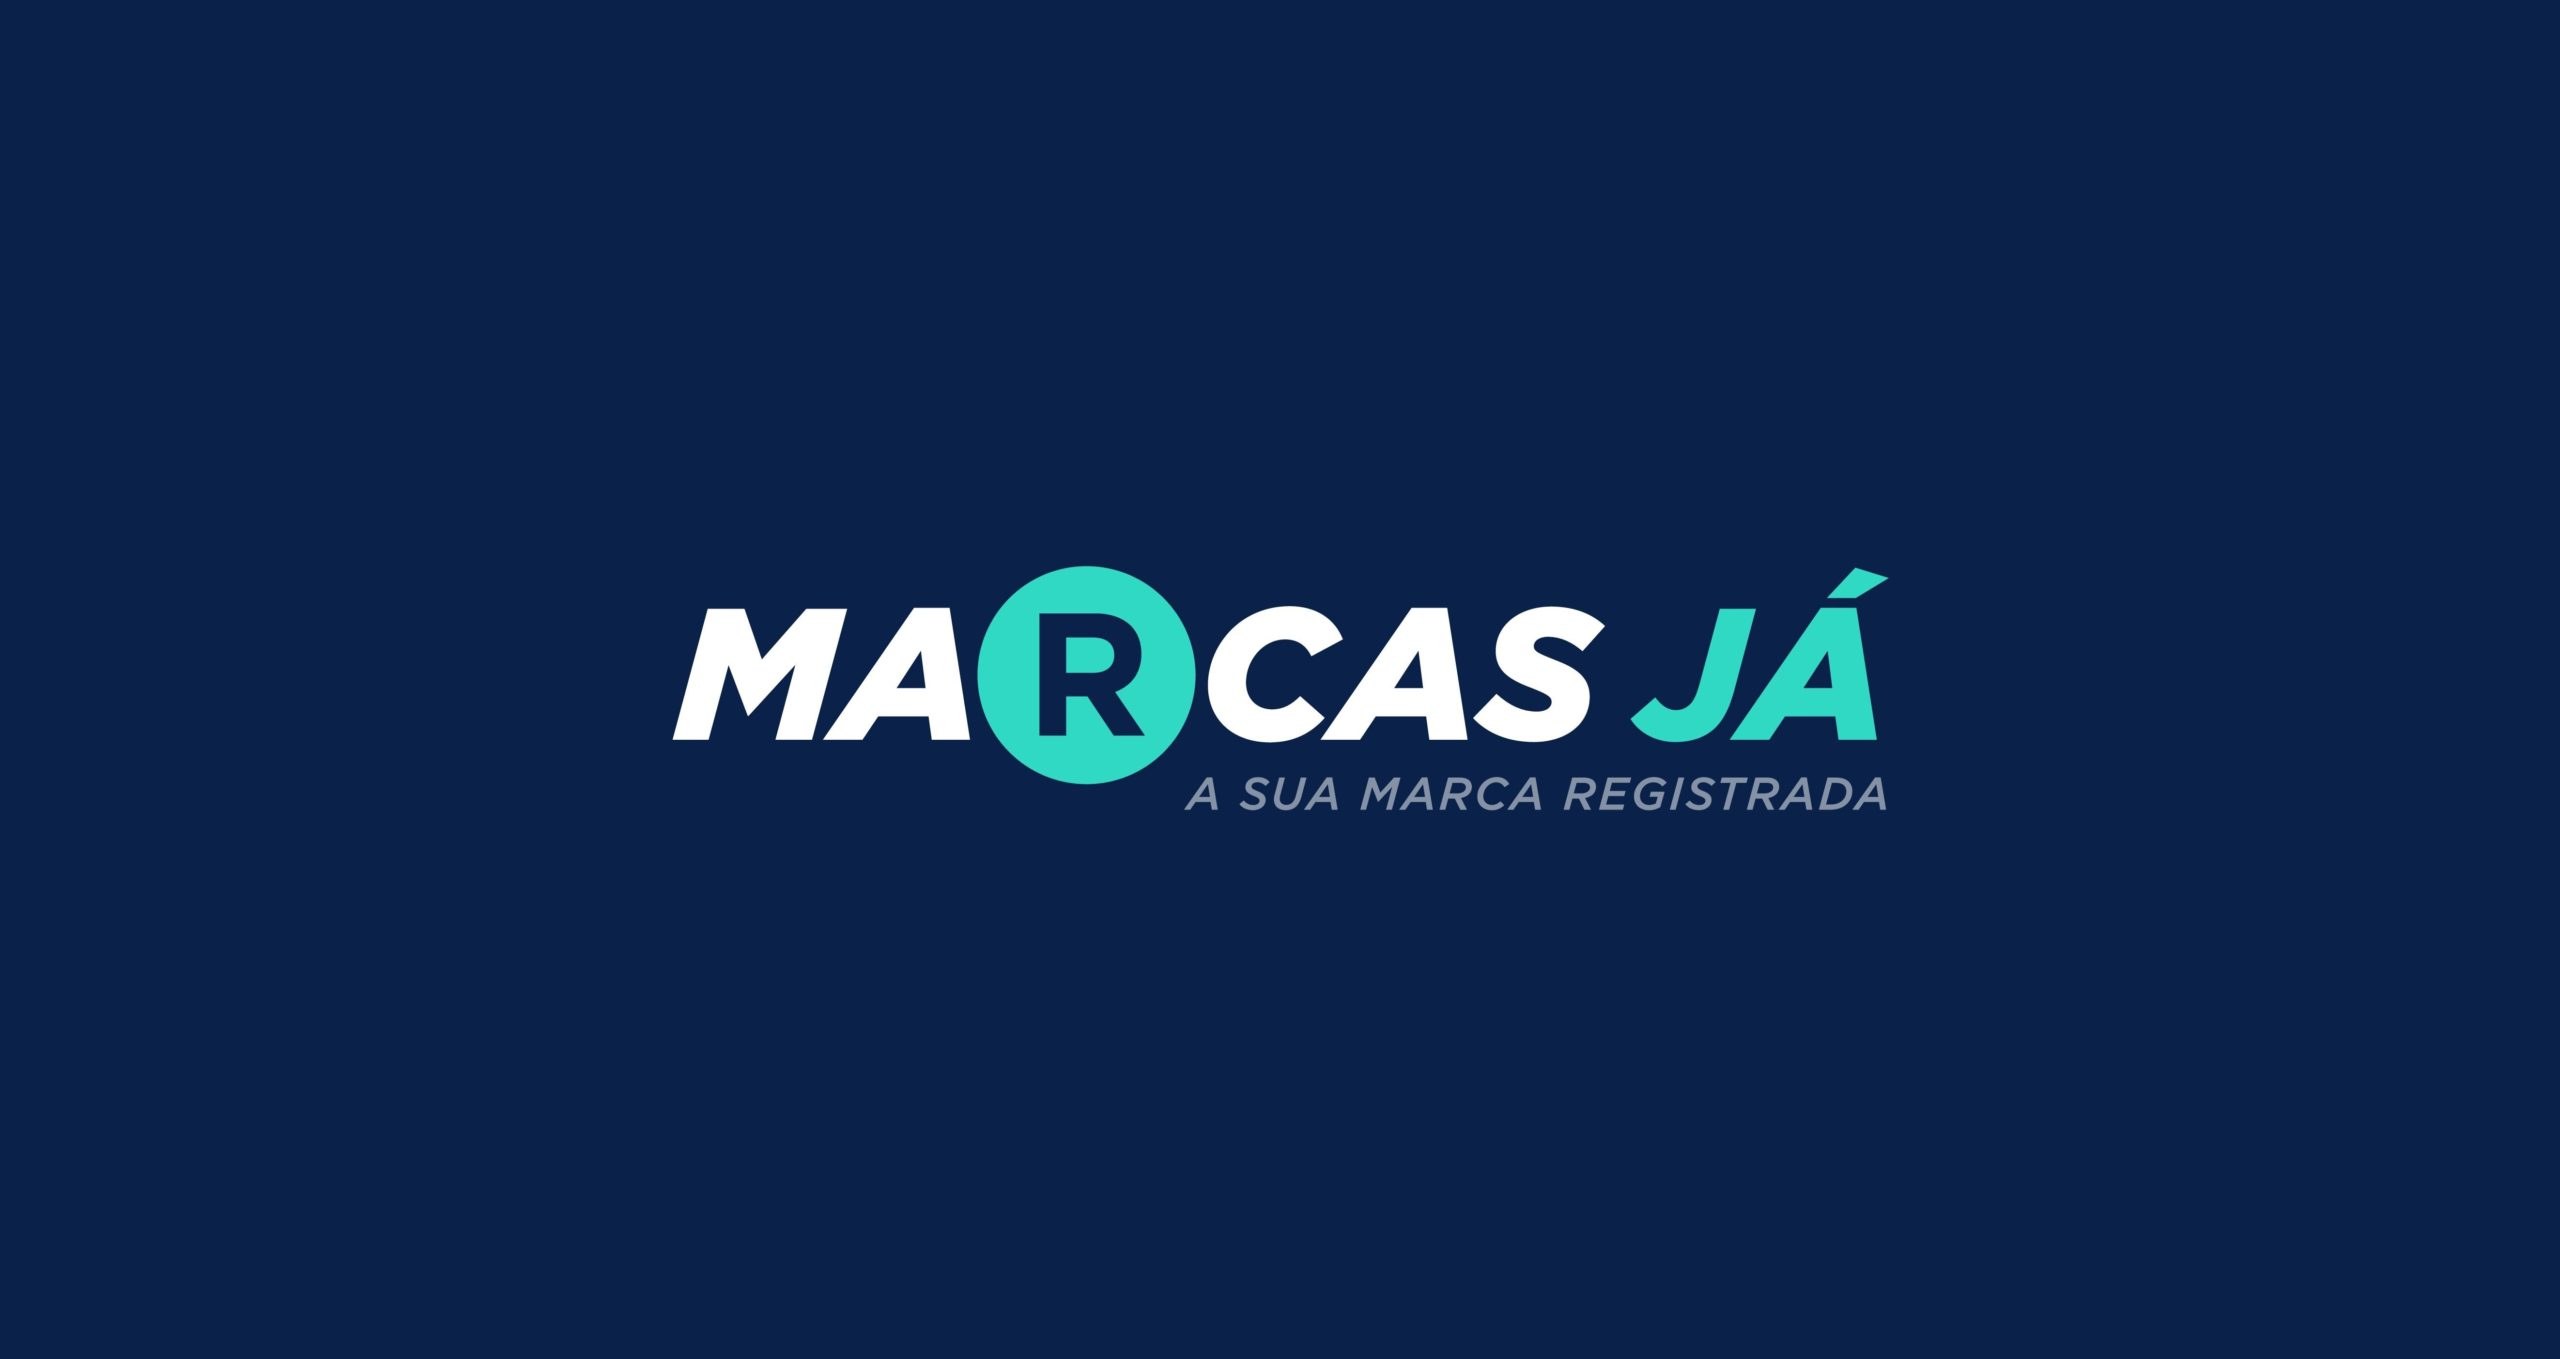 REGISTRO DE MARCA EM MANAUS / AM